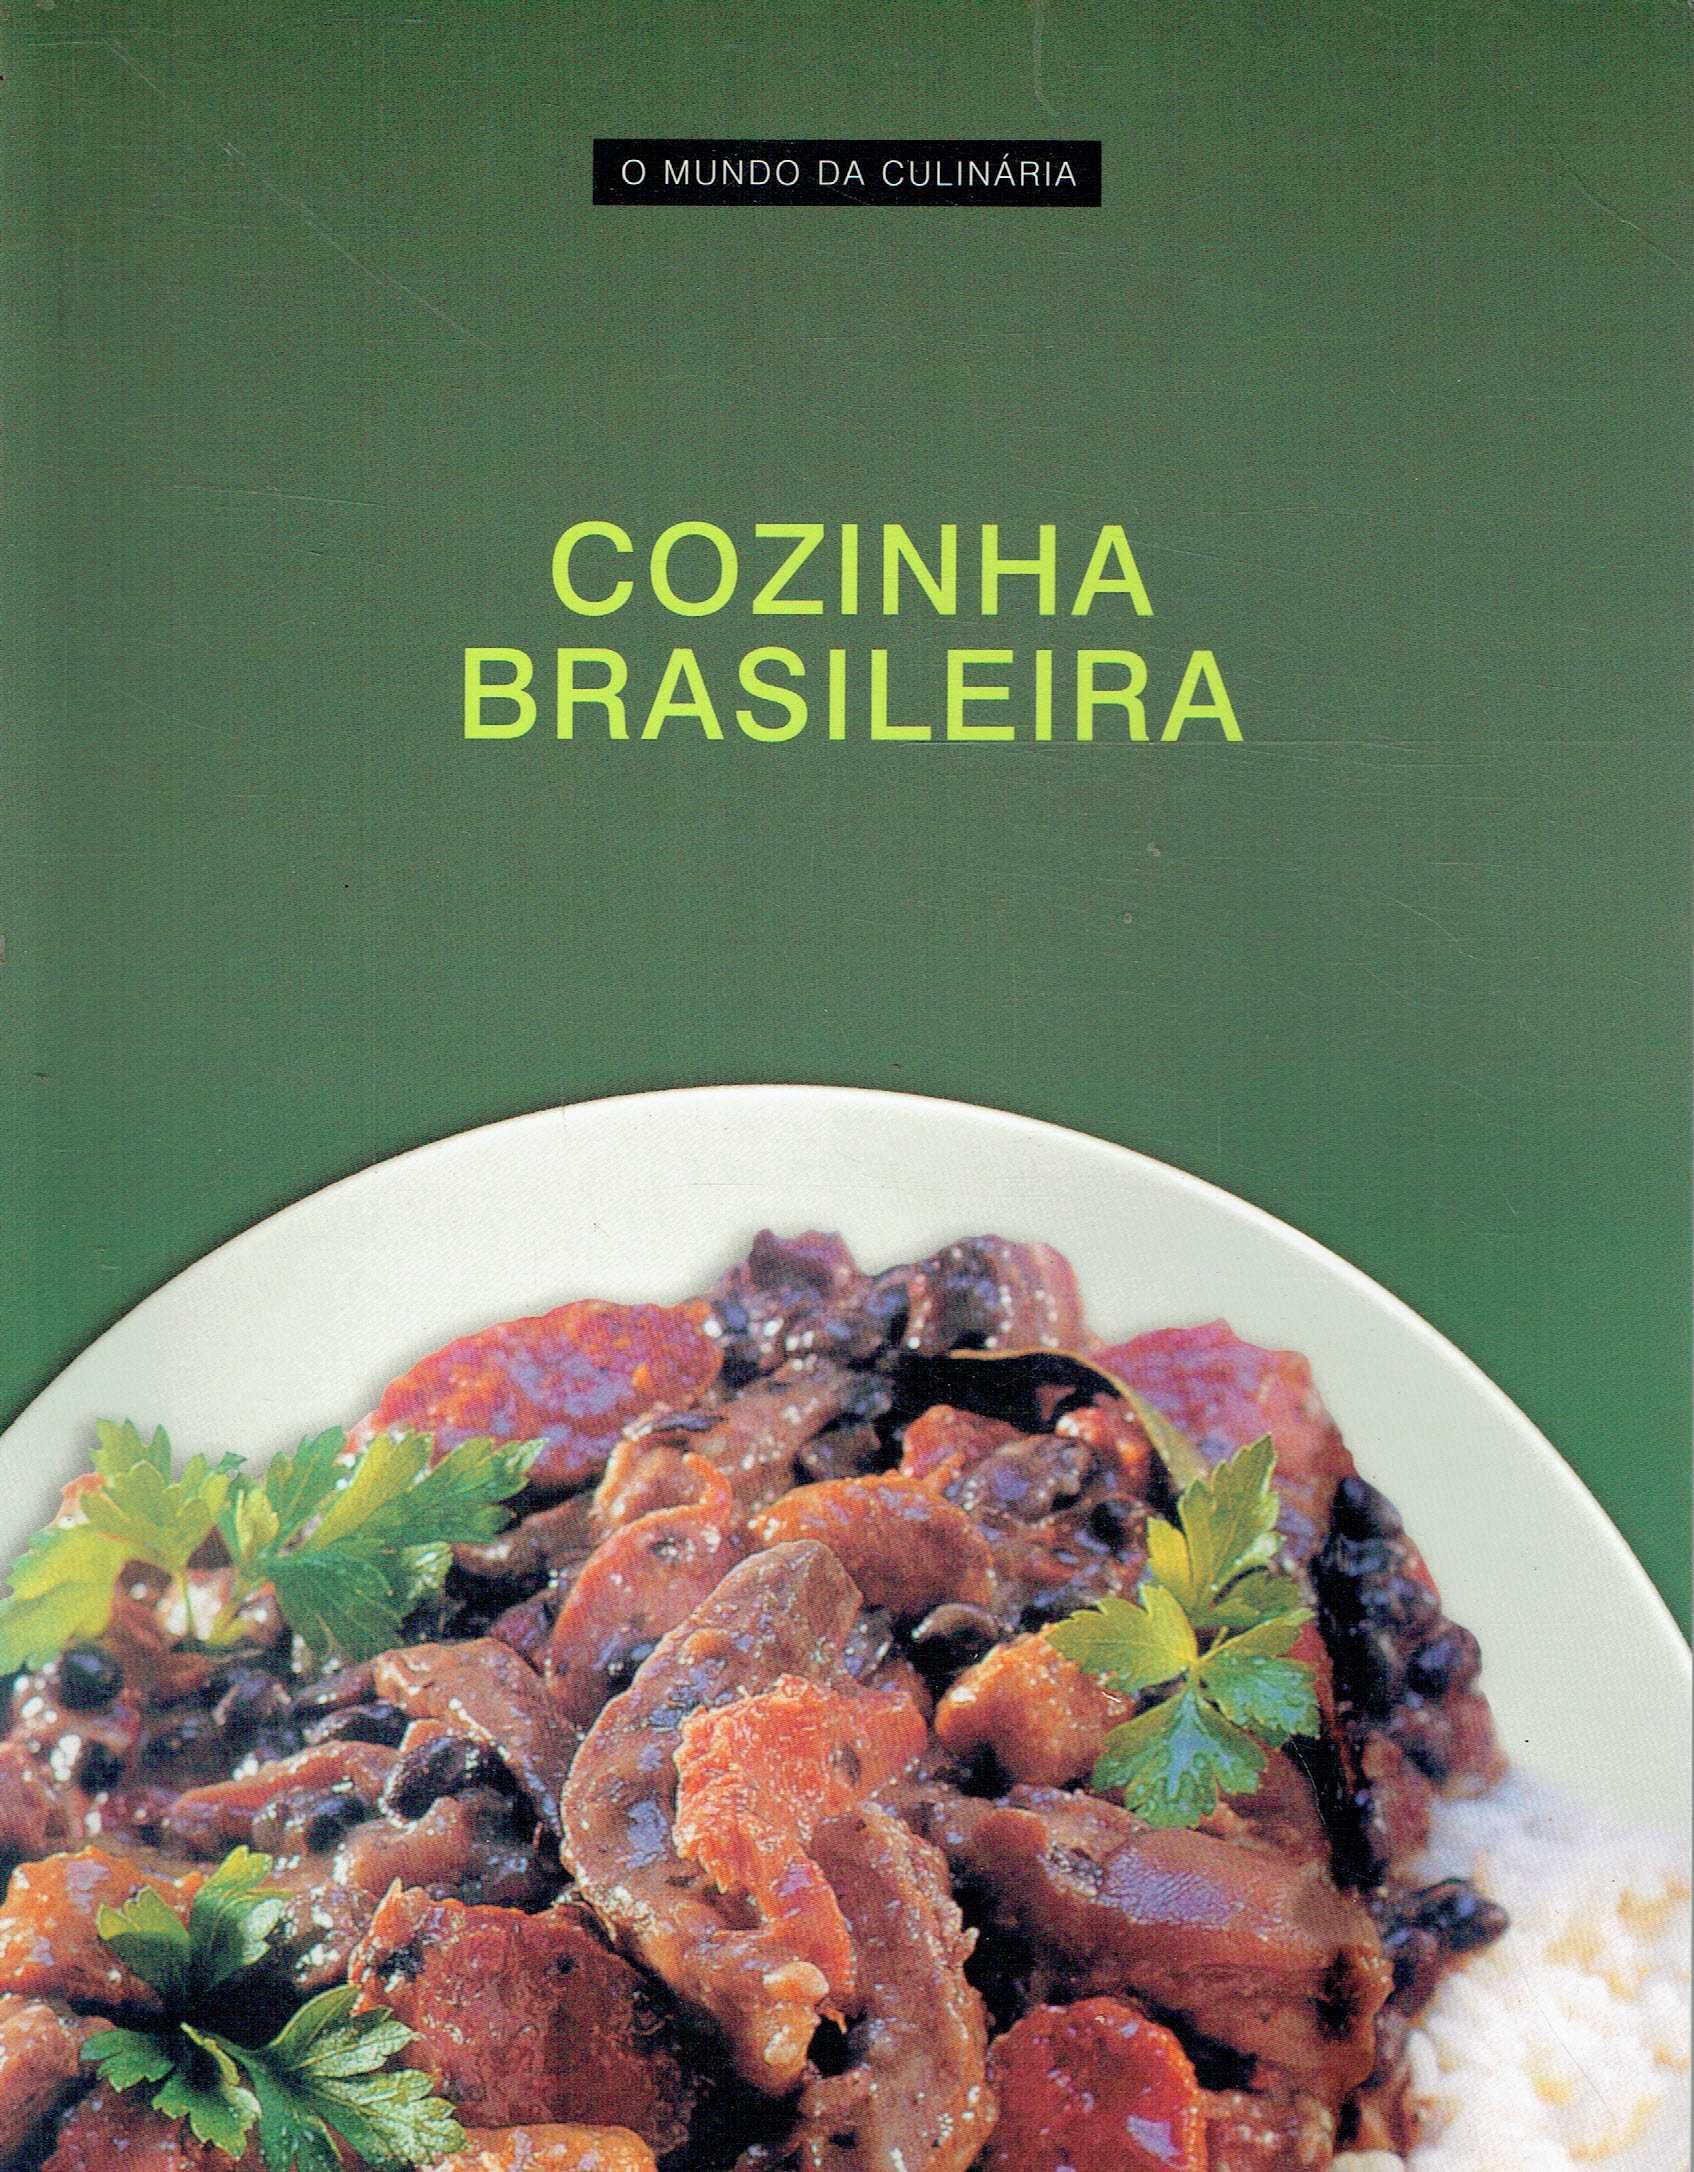 7465

Cozinha Brasileira
O Mundo Da Culinária